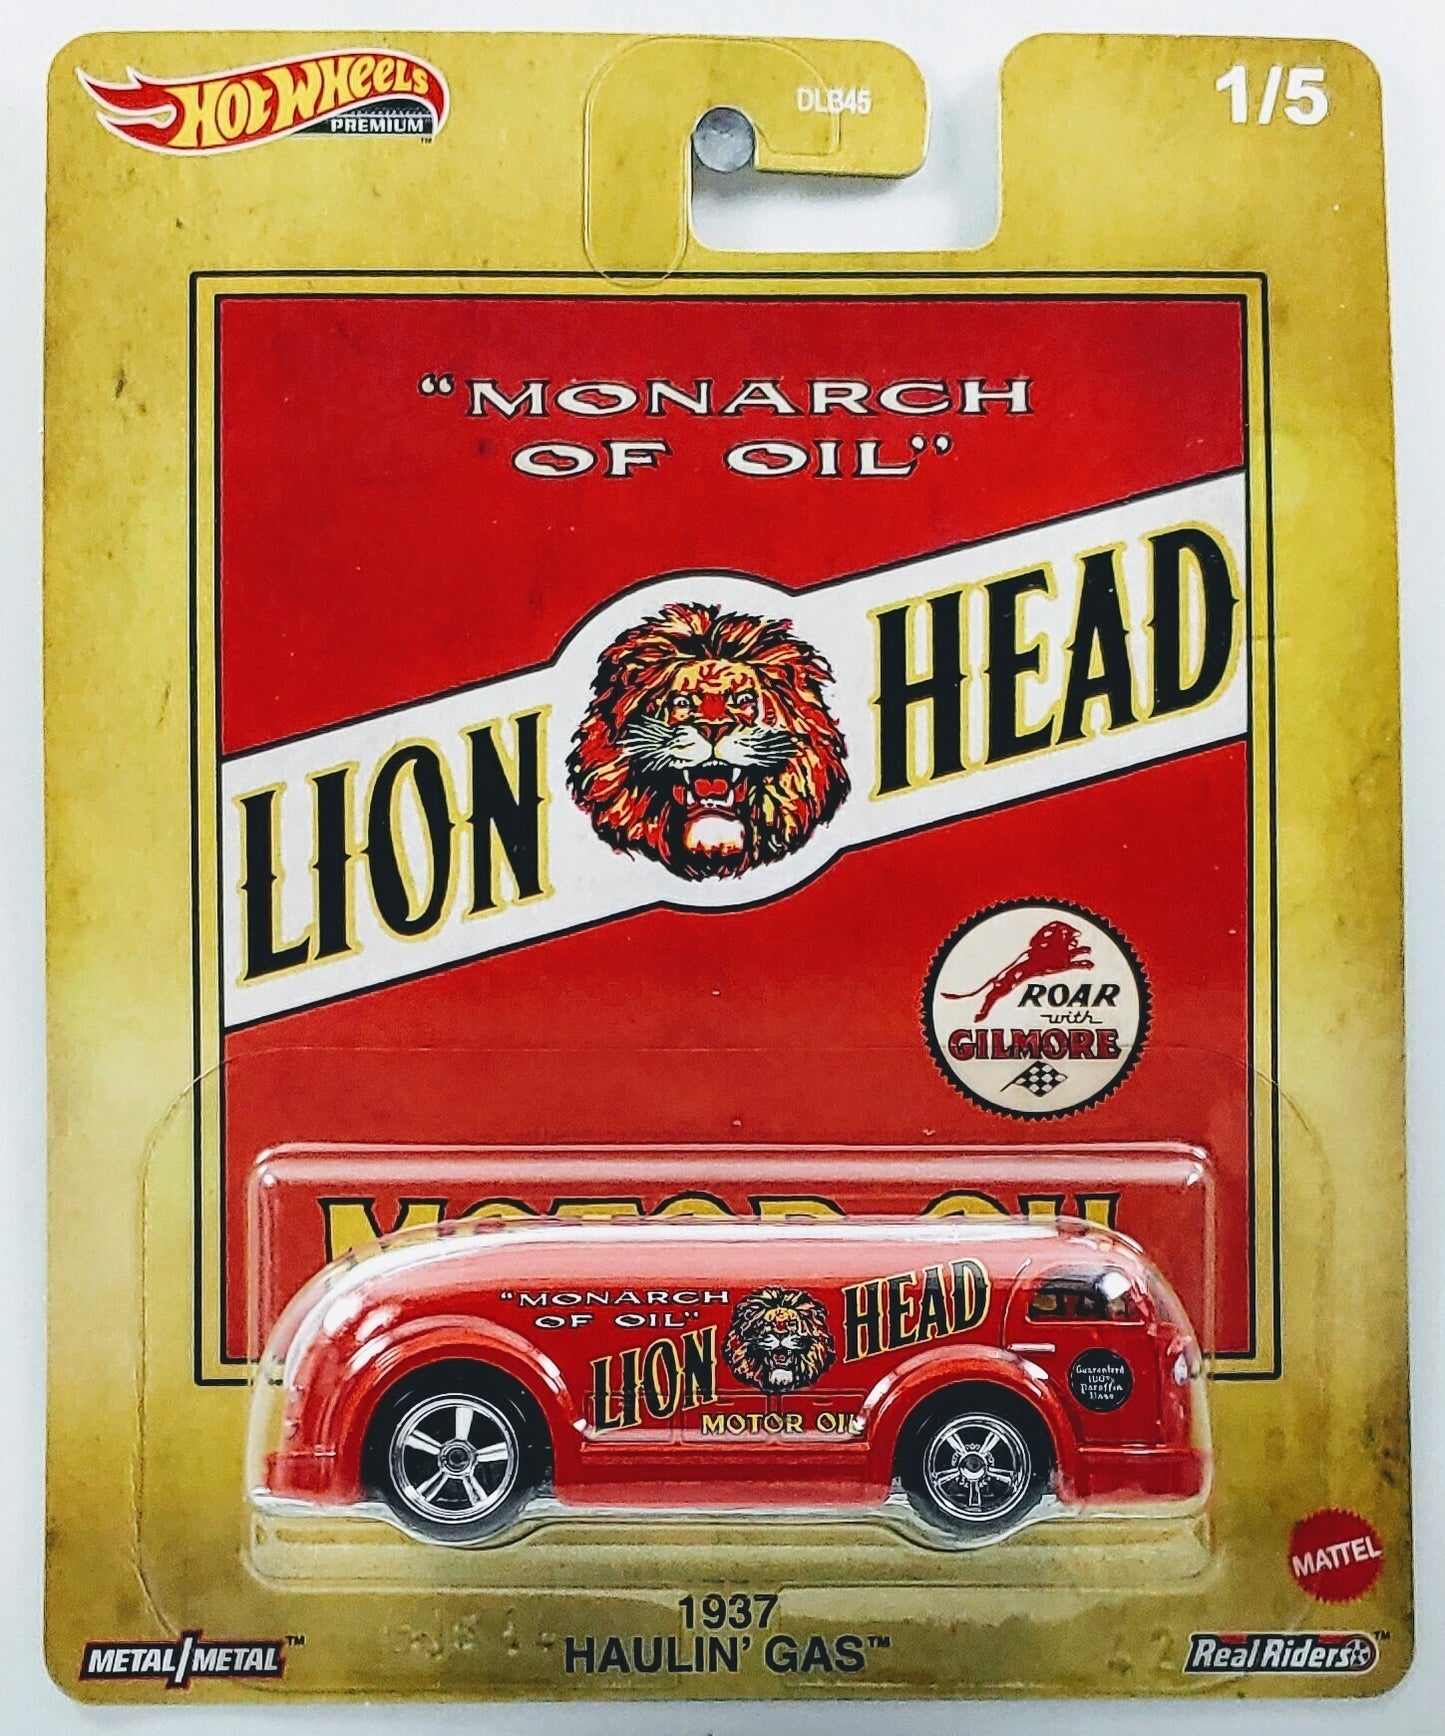 Hot Wheels 2020 - Premium / Vintage Oil # 1/5 - Haulin' Gas - Red / Lion Head Motor Oil - Metal/Metal & Real Riders